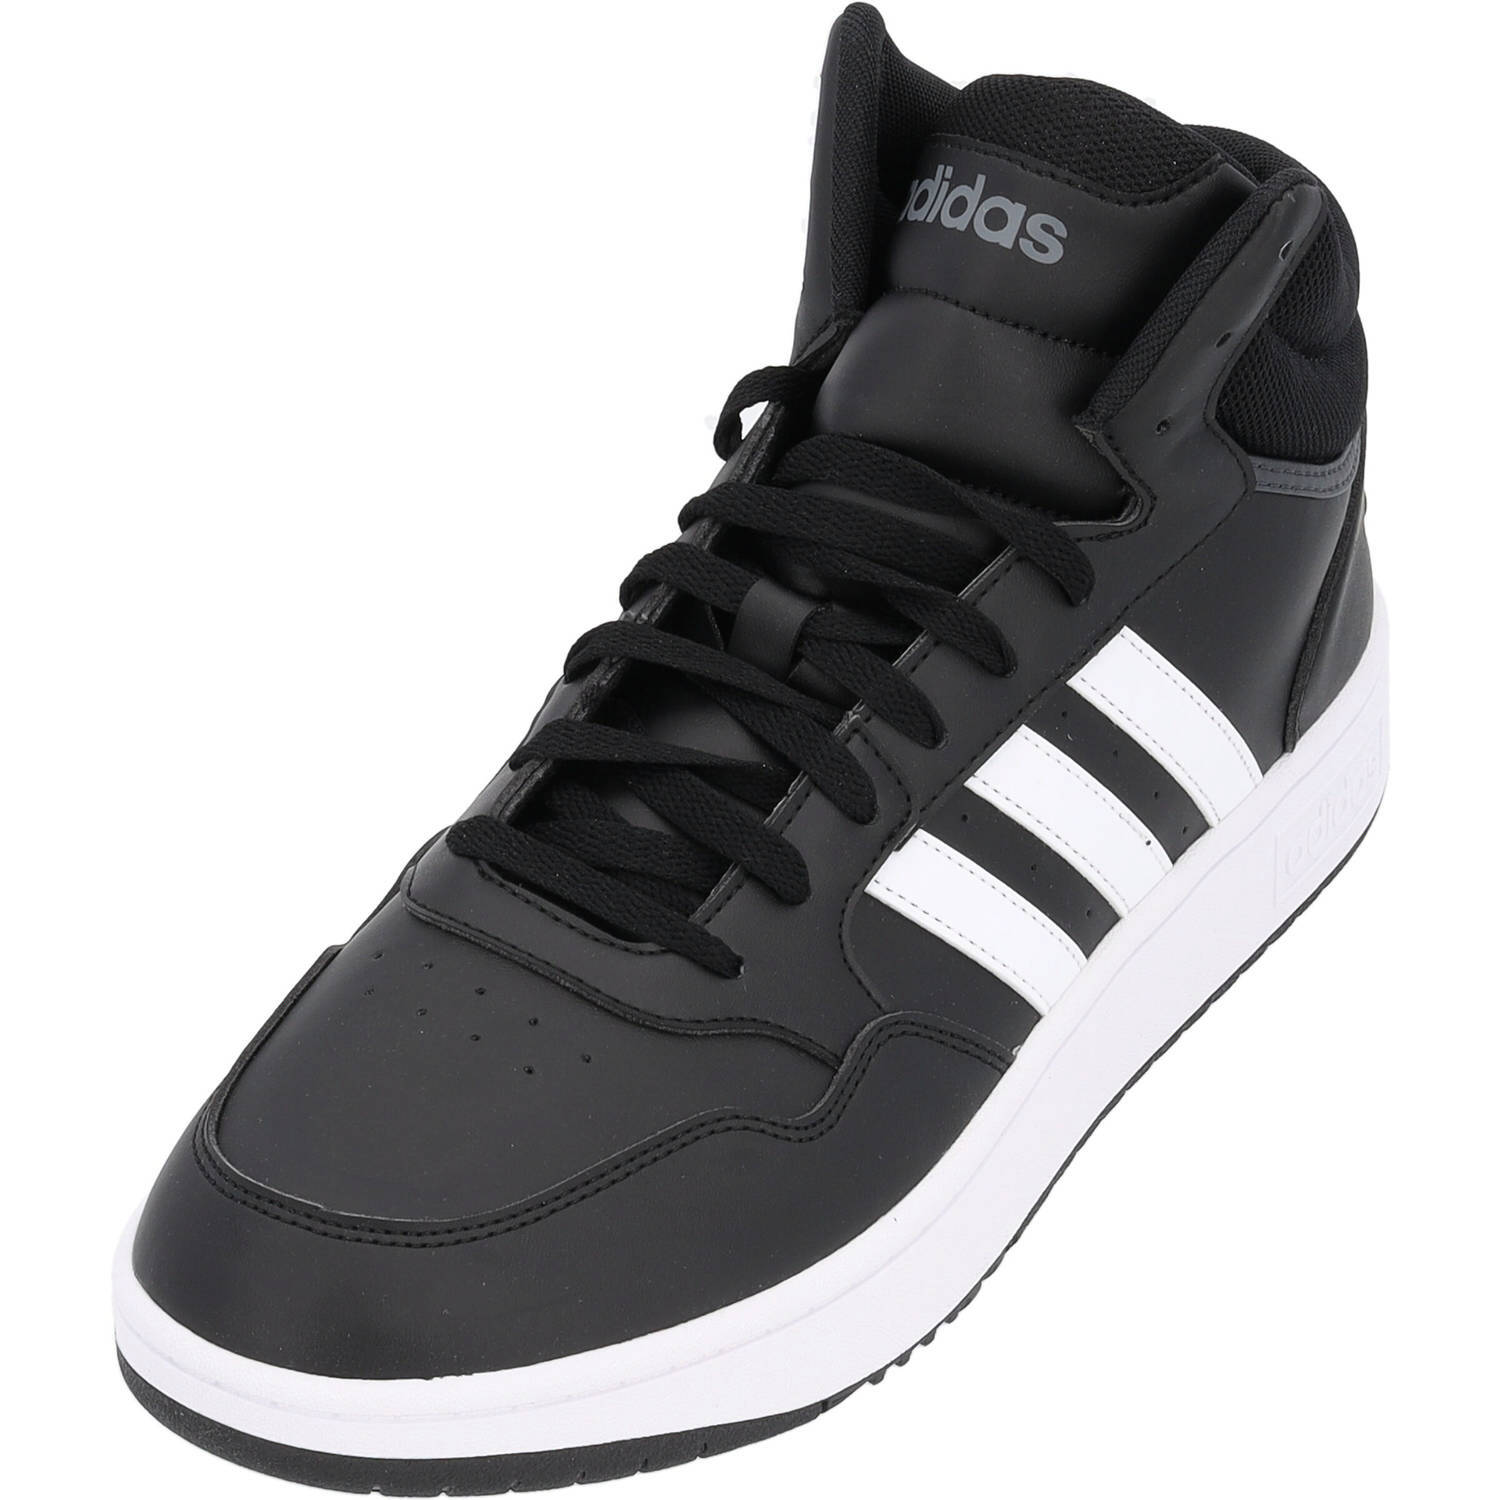 Высокие кроссовки adidas High, цвет core black/ftwr white/grey six